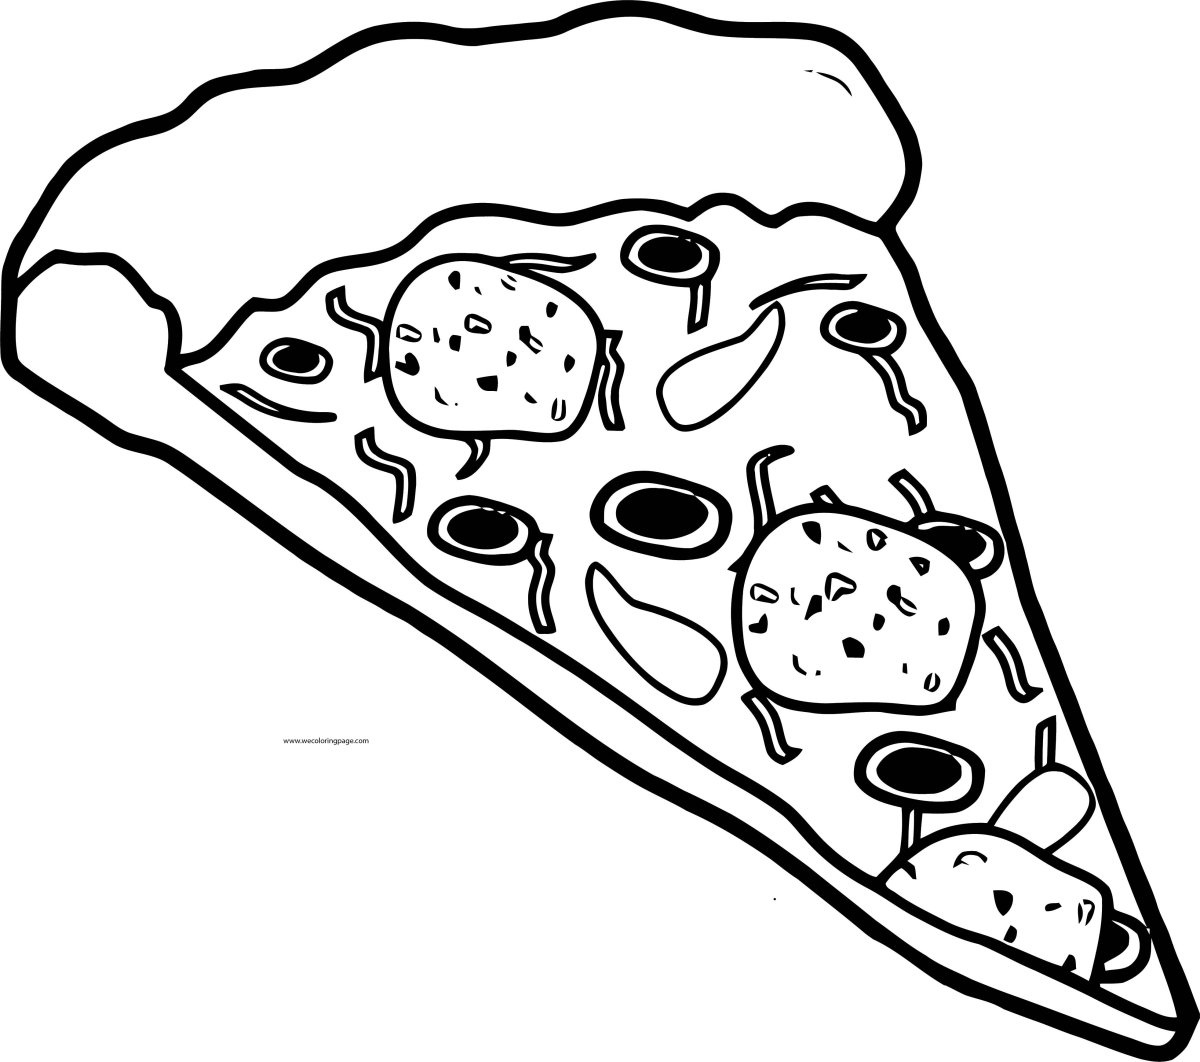 Пицца черно белая. Картинка пицца раскраска. Пицца трафарет. Пицца для рисования черно белая. Пицца раскраска для детей.